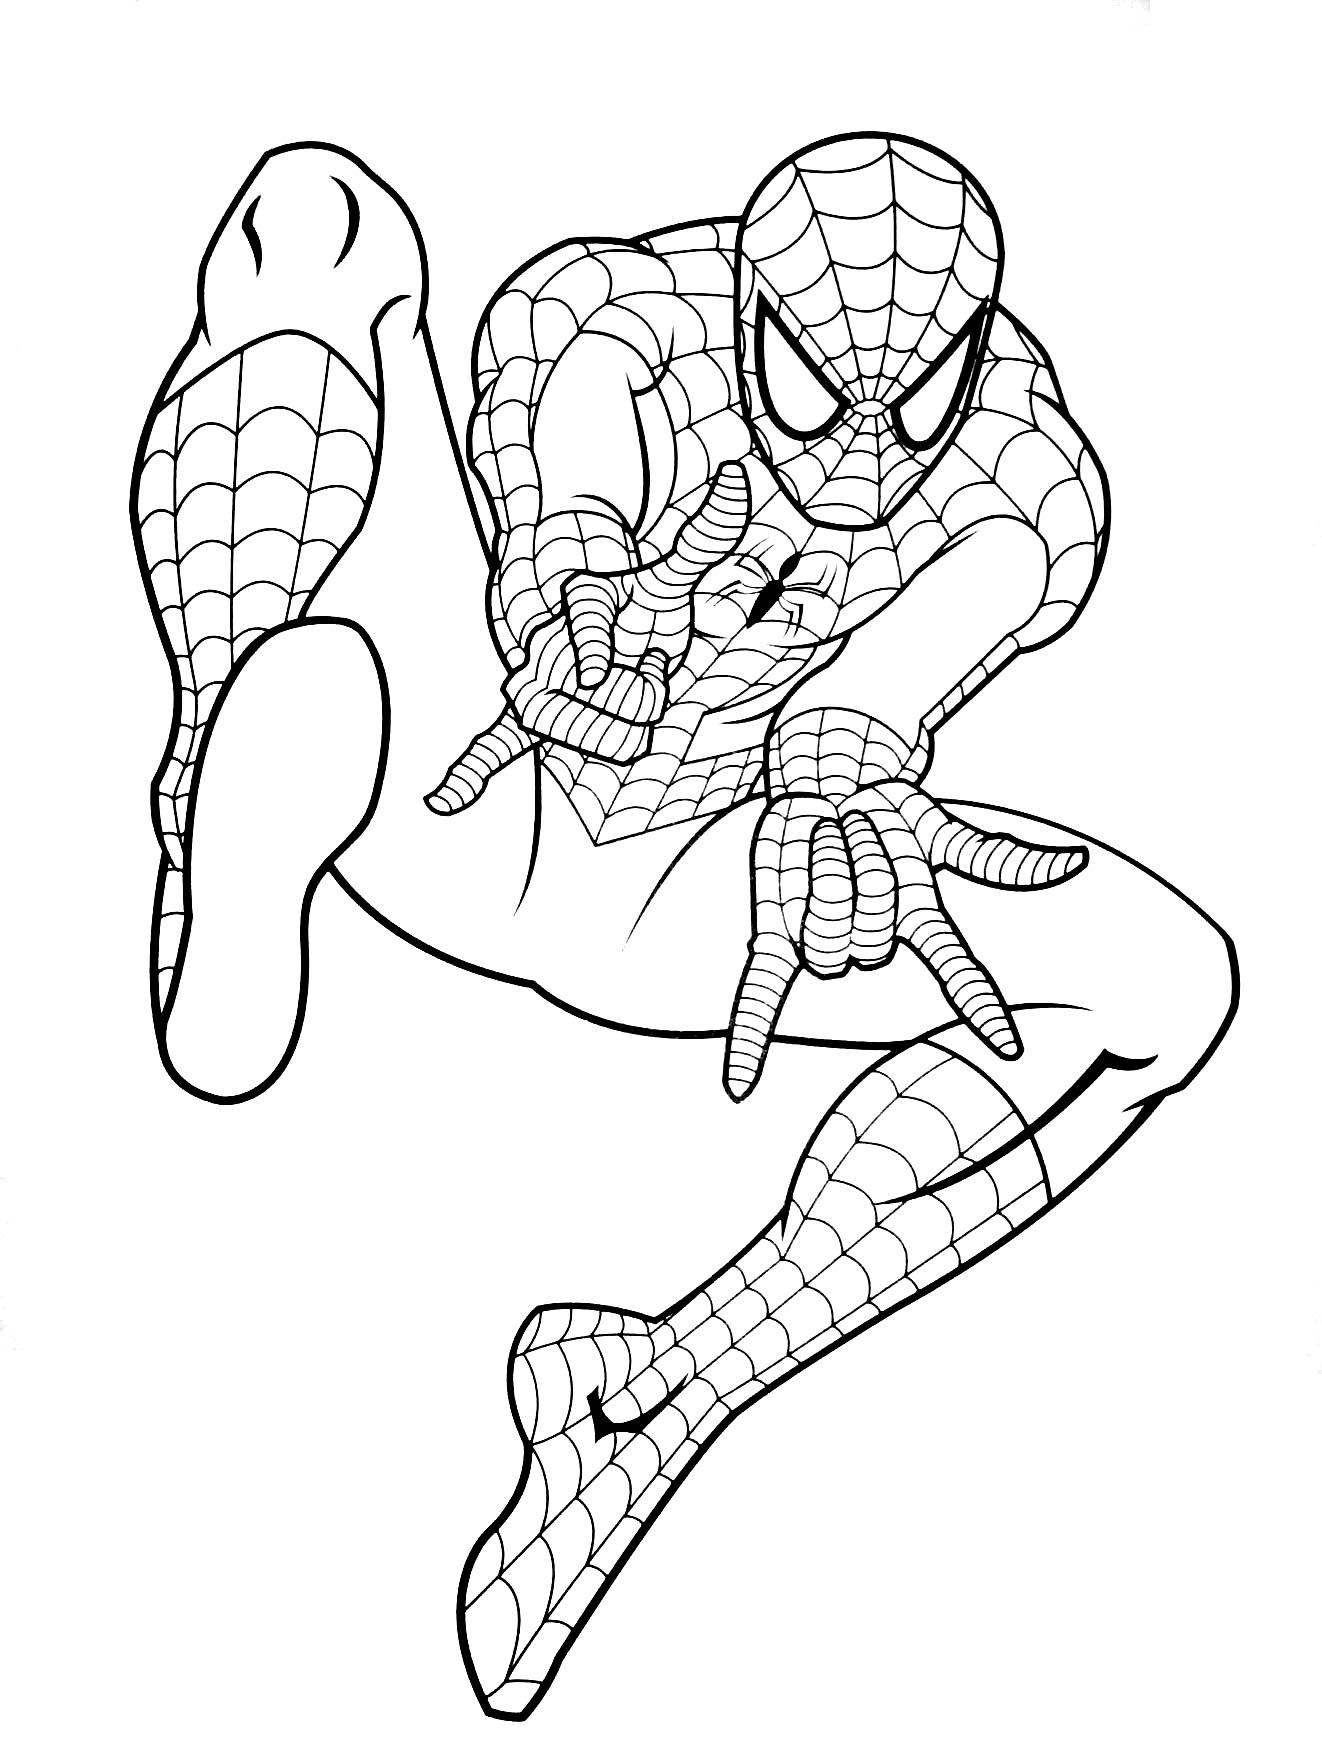 Acusador calidad nativo Páginas para colorear de Spiderman para niños - Spiderman - Just Color Niños  : Dibujos para colorear para niños